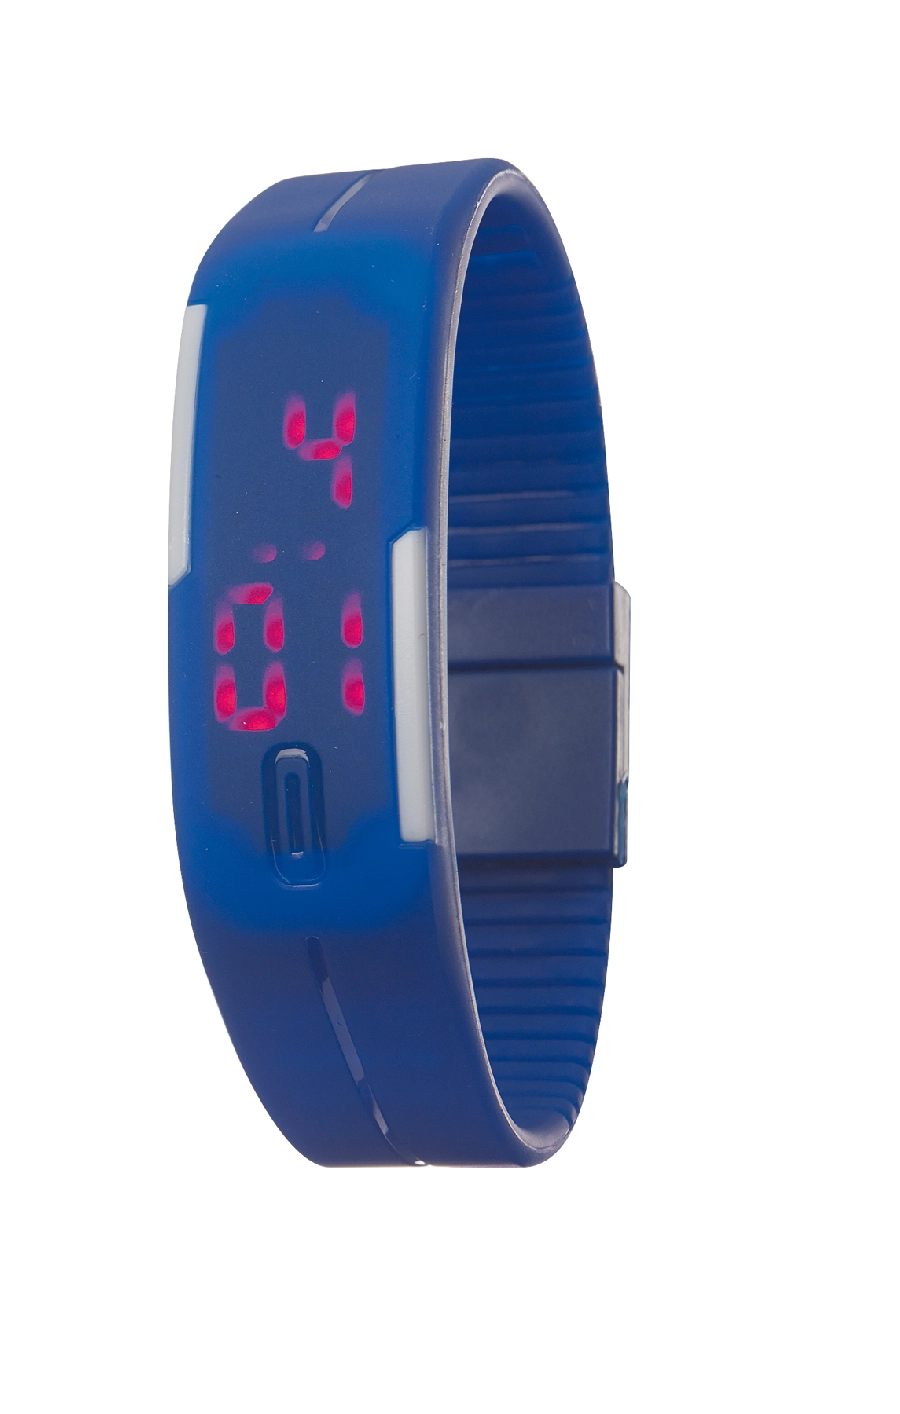 Zegarek na rękę IN TIME, niebieski 56-0401944 niebieski